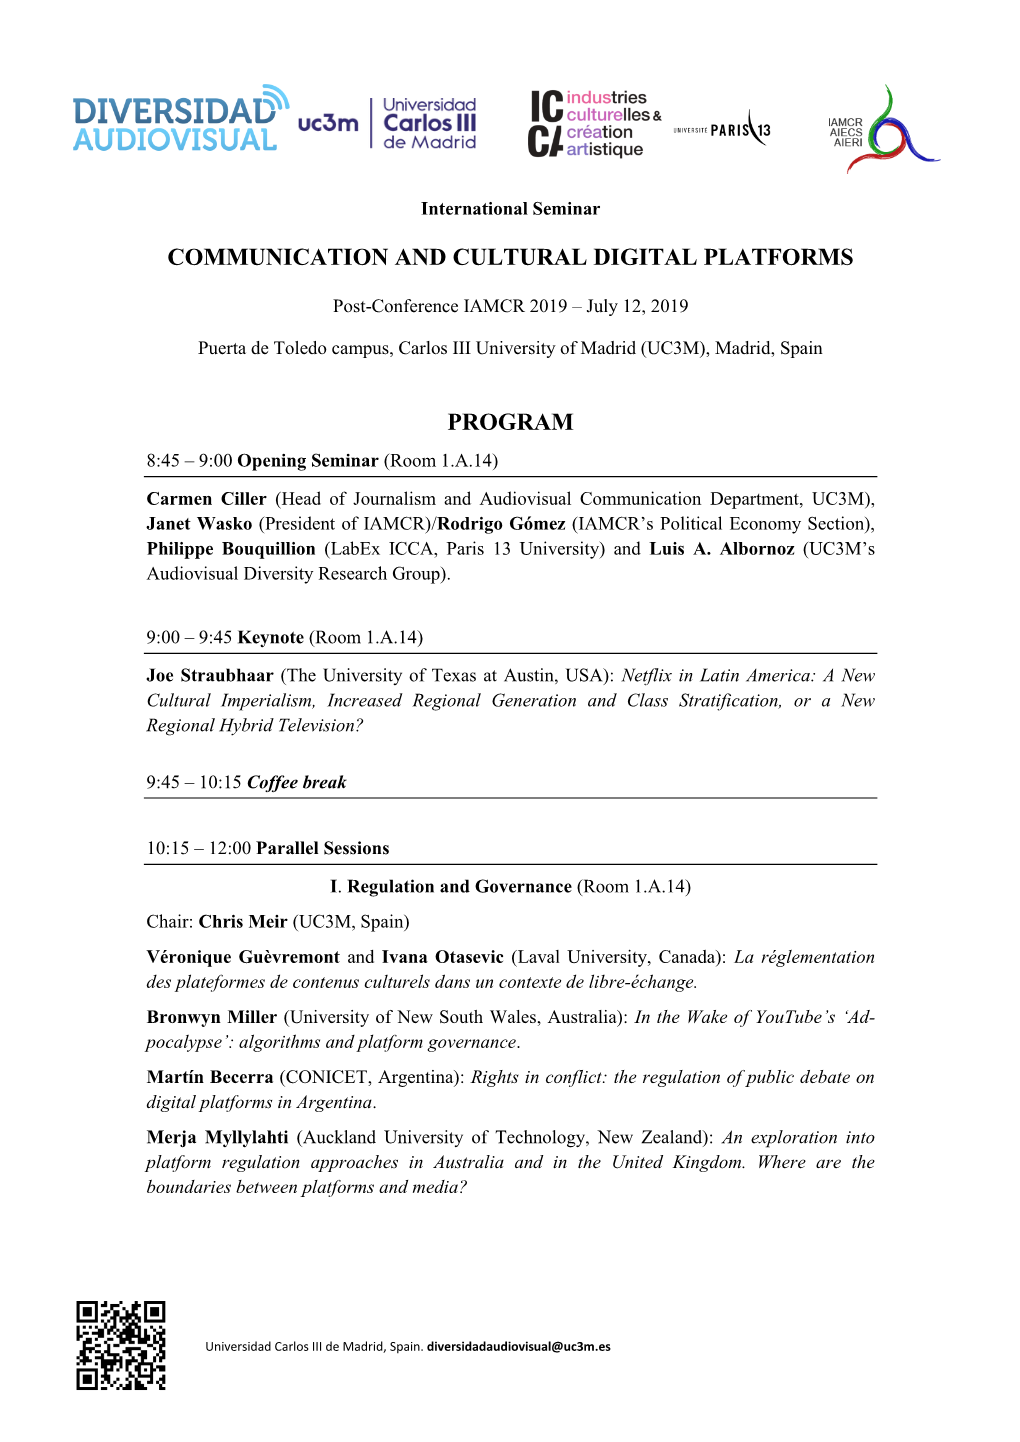 Communication and Cultural Digital Platforms Program